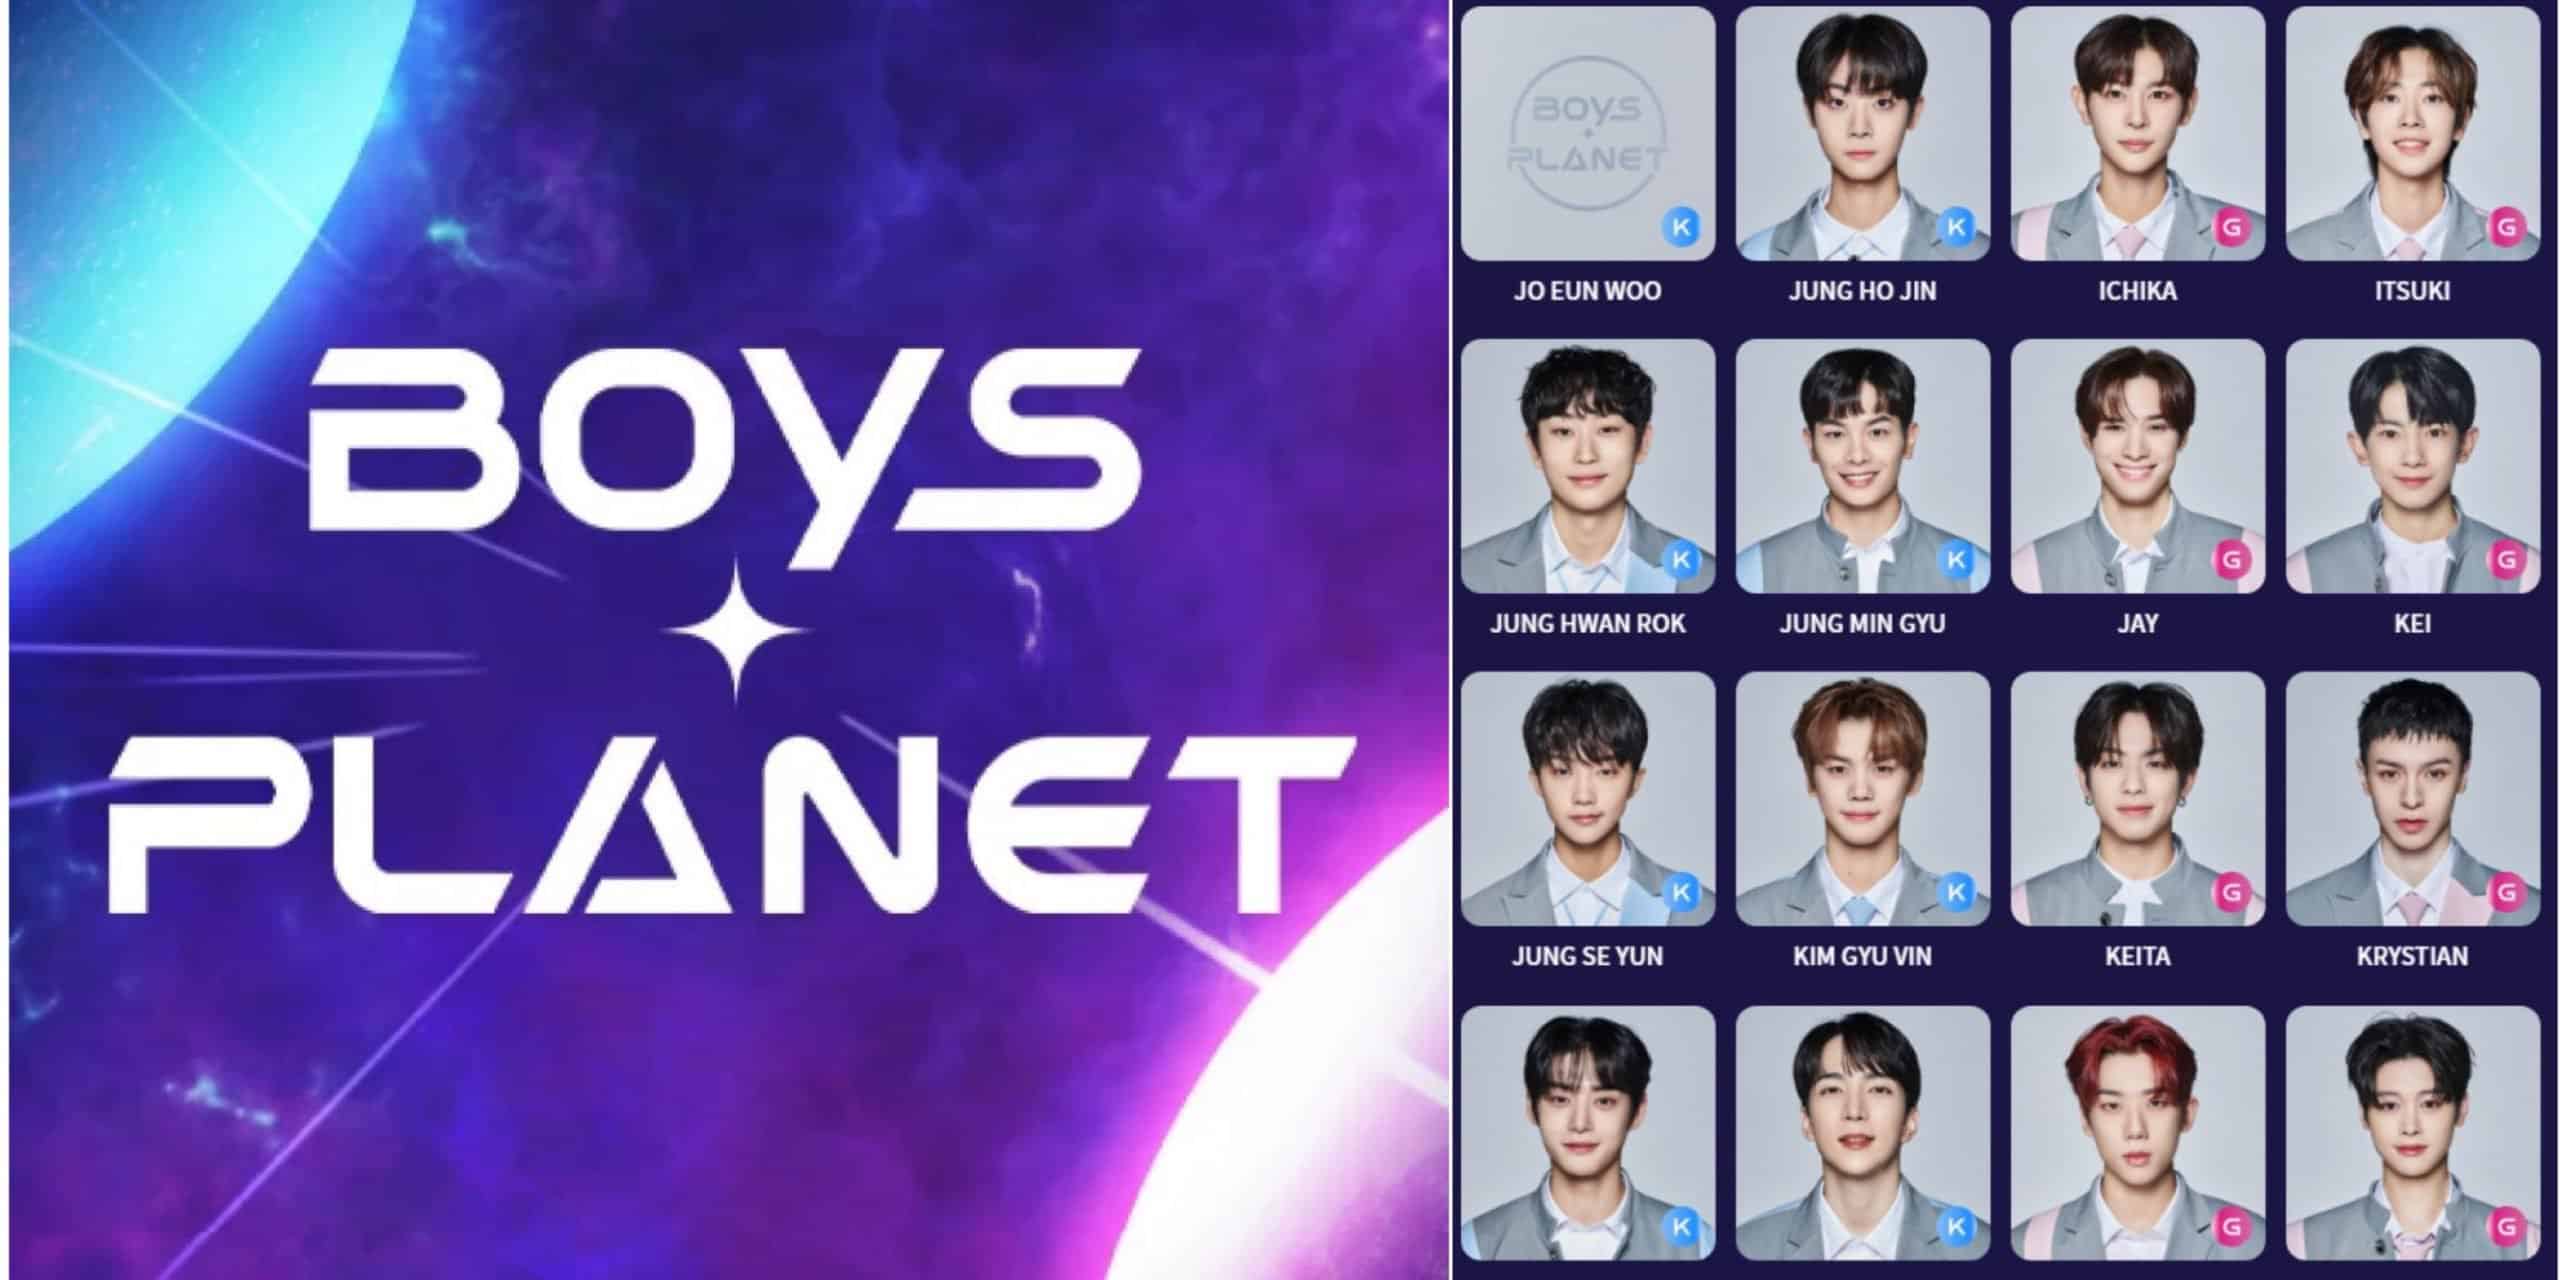 Boys Planet K-pop Survival Show Episode 8 Release Date